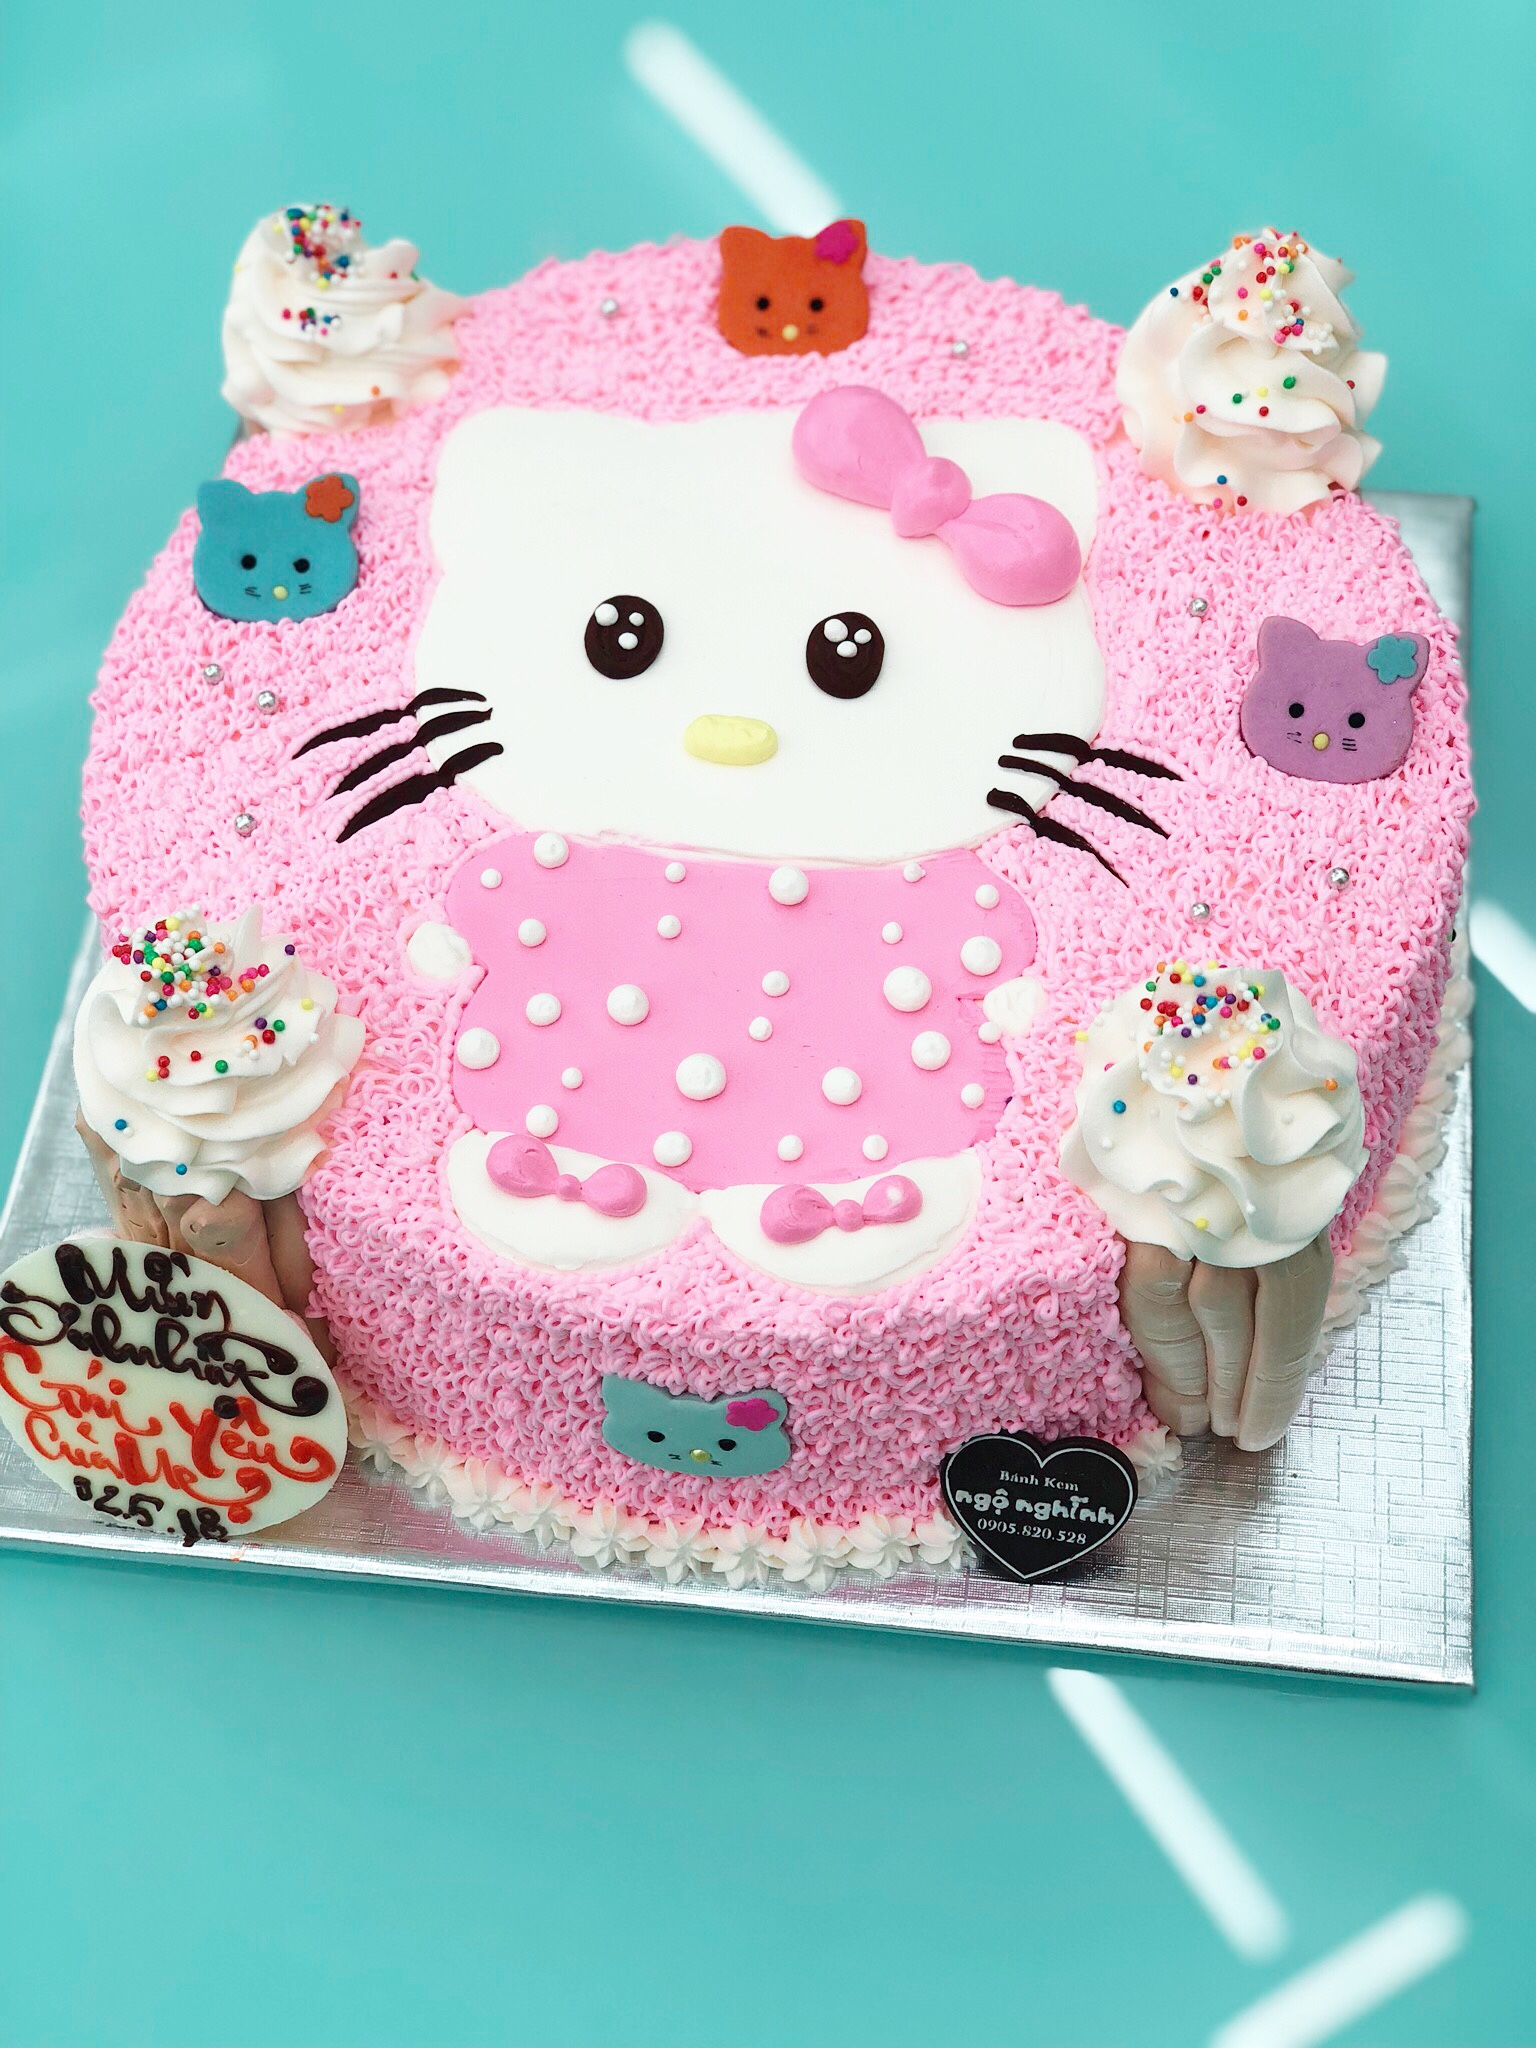 Hôm nay là ngày sinh nhật bạn thân của bạn và bạn đang muốn tặng cho cô ấy một chiếc bánh sinh nhật đặc biệt? Đừng lo lắng, hãy xem ngay hình ảnh liên quan đến từ khóa bánh sinh nhật trên trang web của chúng tôi để có thêm ý tưởng và cảm hứng cho chiếc bánh của bạn nhé!